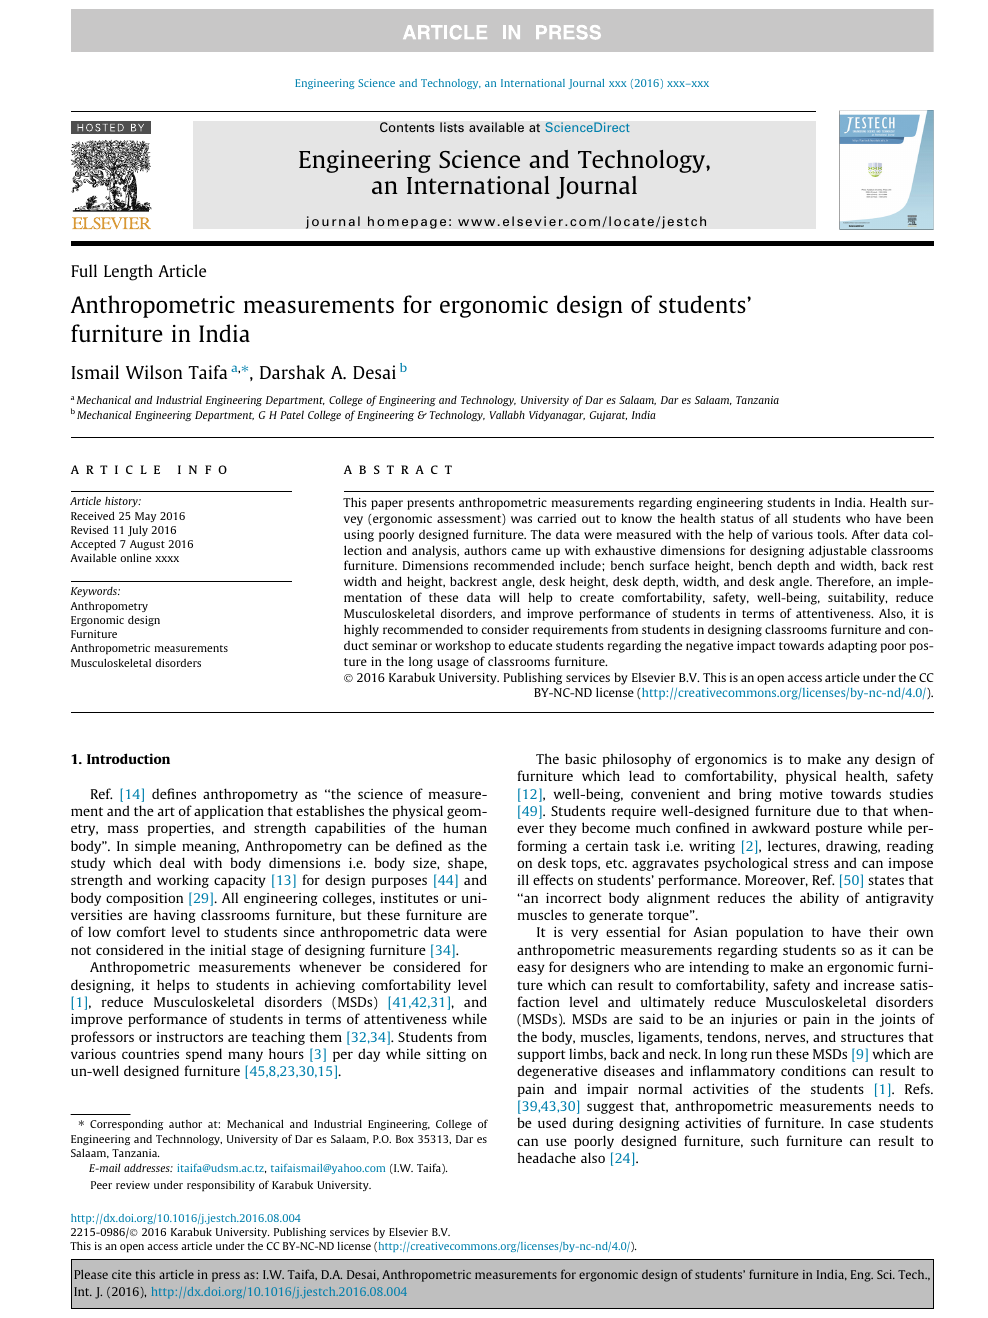 indian anthropometric dimensions for ergonomic design practice pdf